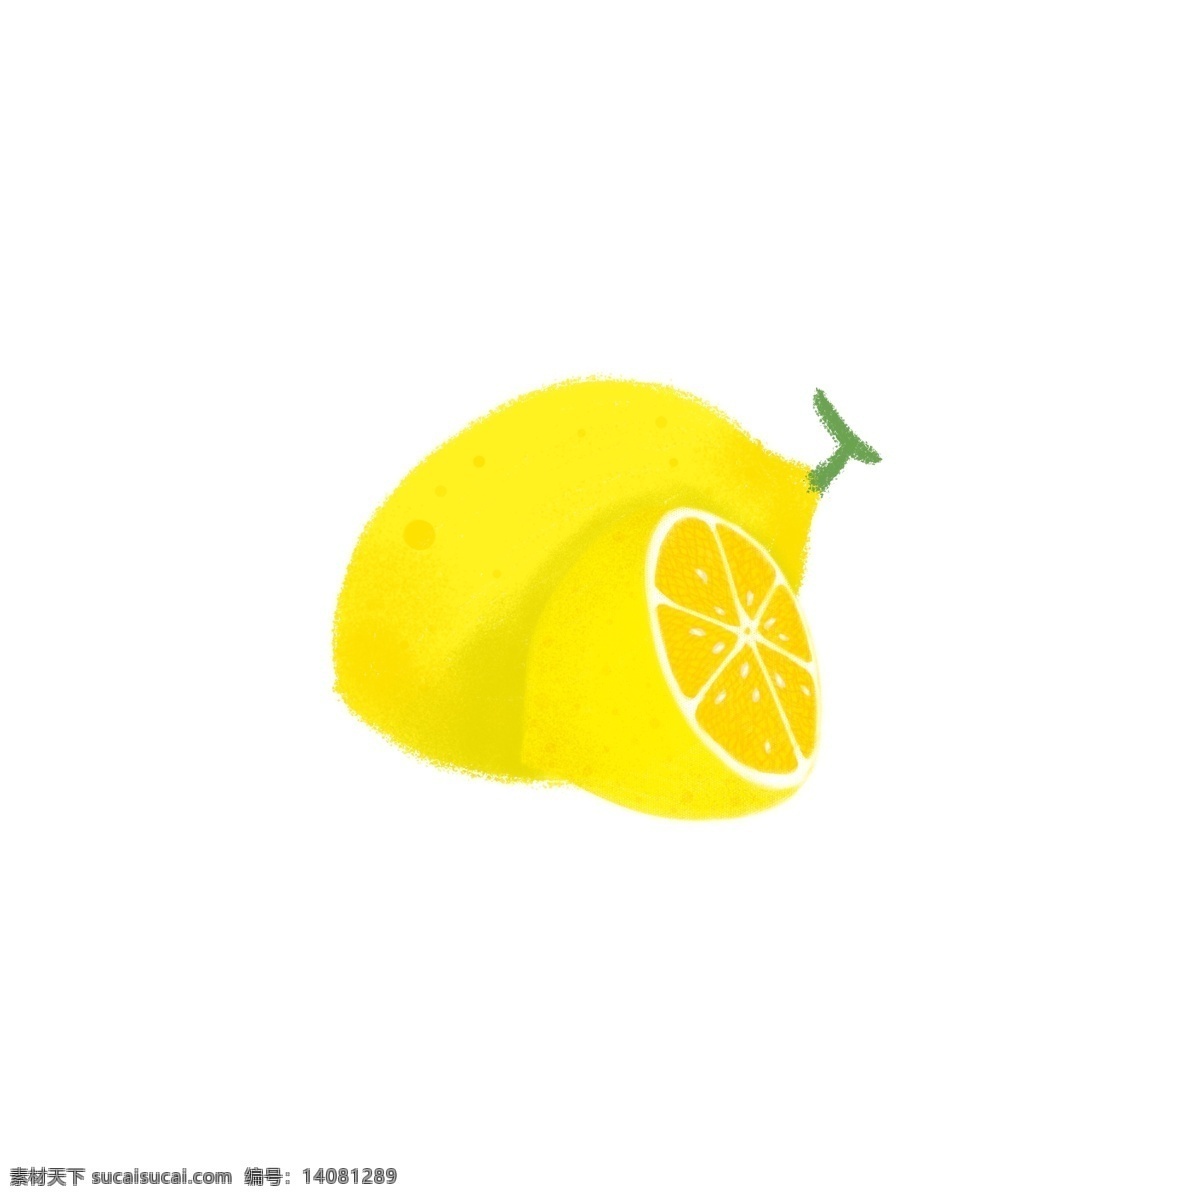 黄色柠檬 黄色 柠檬 可爱 清新 水果 酸味